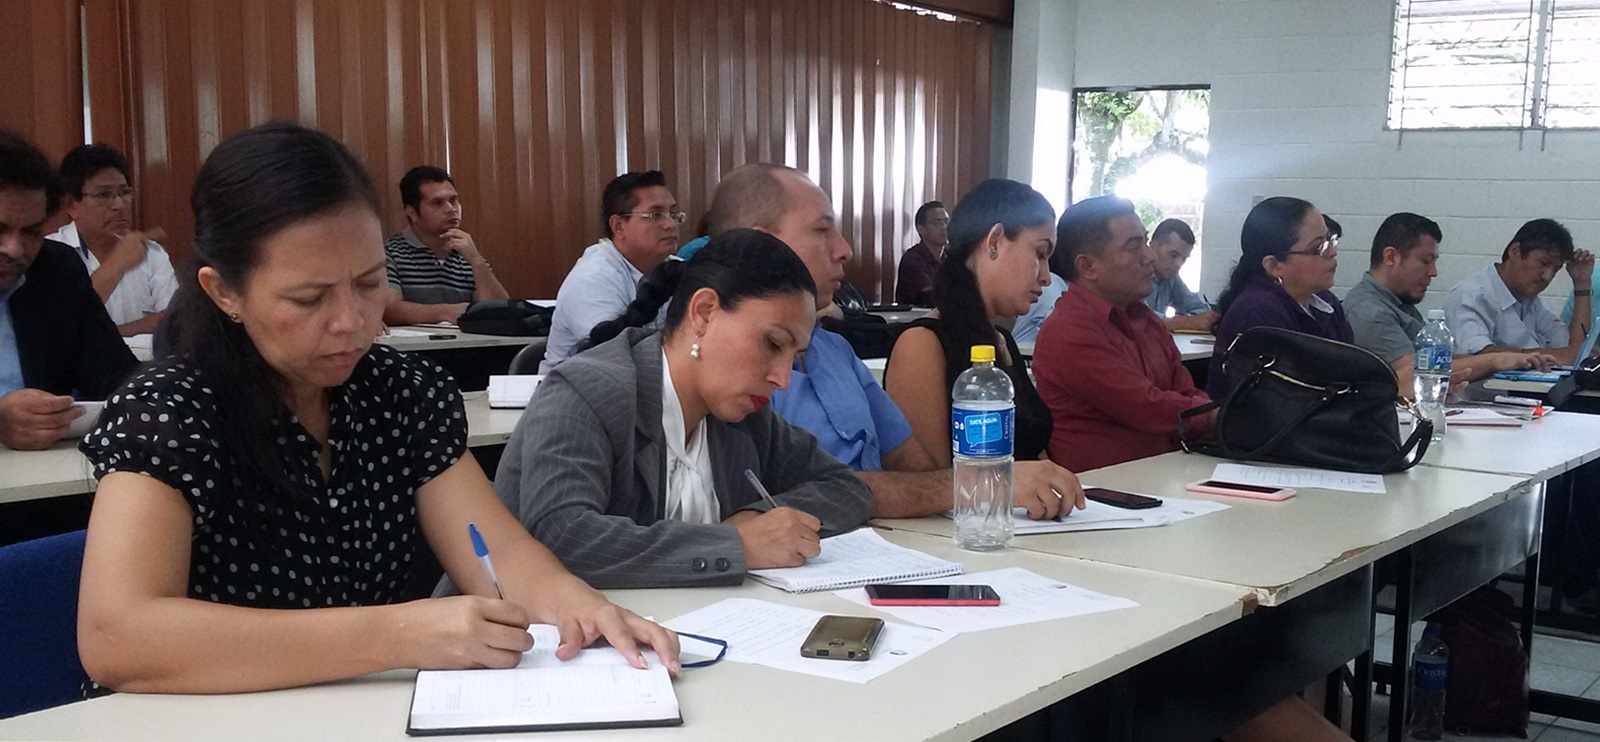 Docentes que asistieron a la capacitación en formación ciudadana a cargo de dos profesores de la Universidad de Chile.